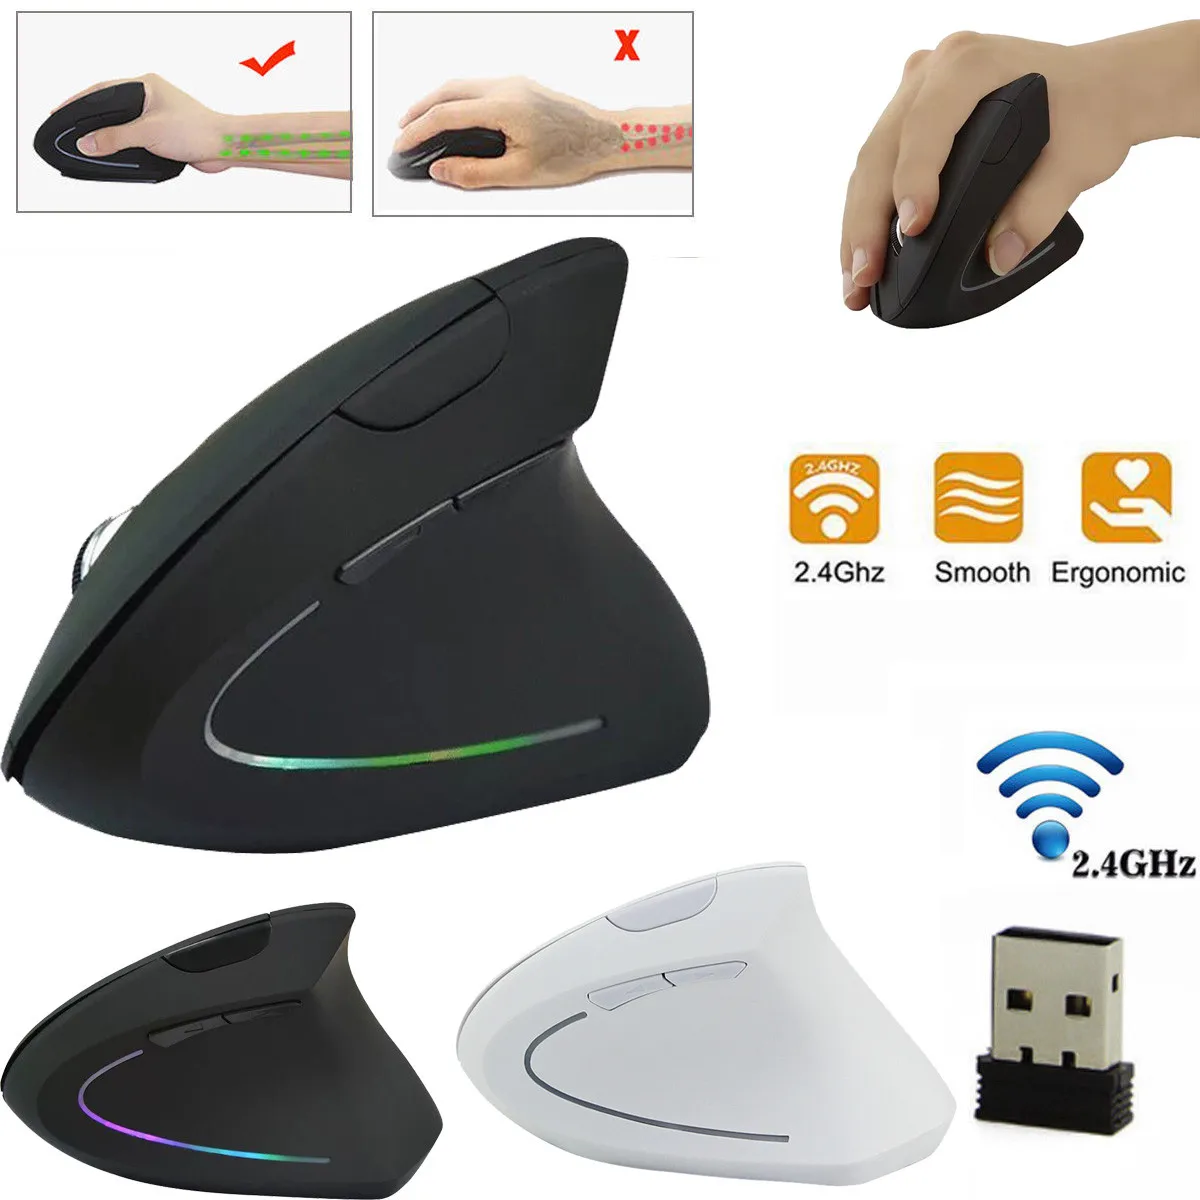 Hxroolrp новая брендовая мышь прочная 6 кнопок беспроводная мышь 2,4 ГГц игра эргономичный дизайн вертикальная мышь 1600 dpi USB мыши A30